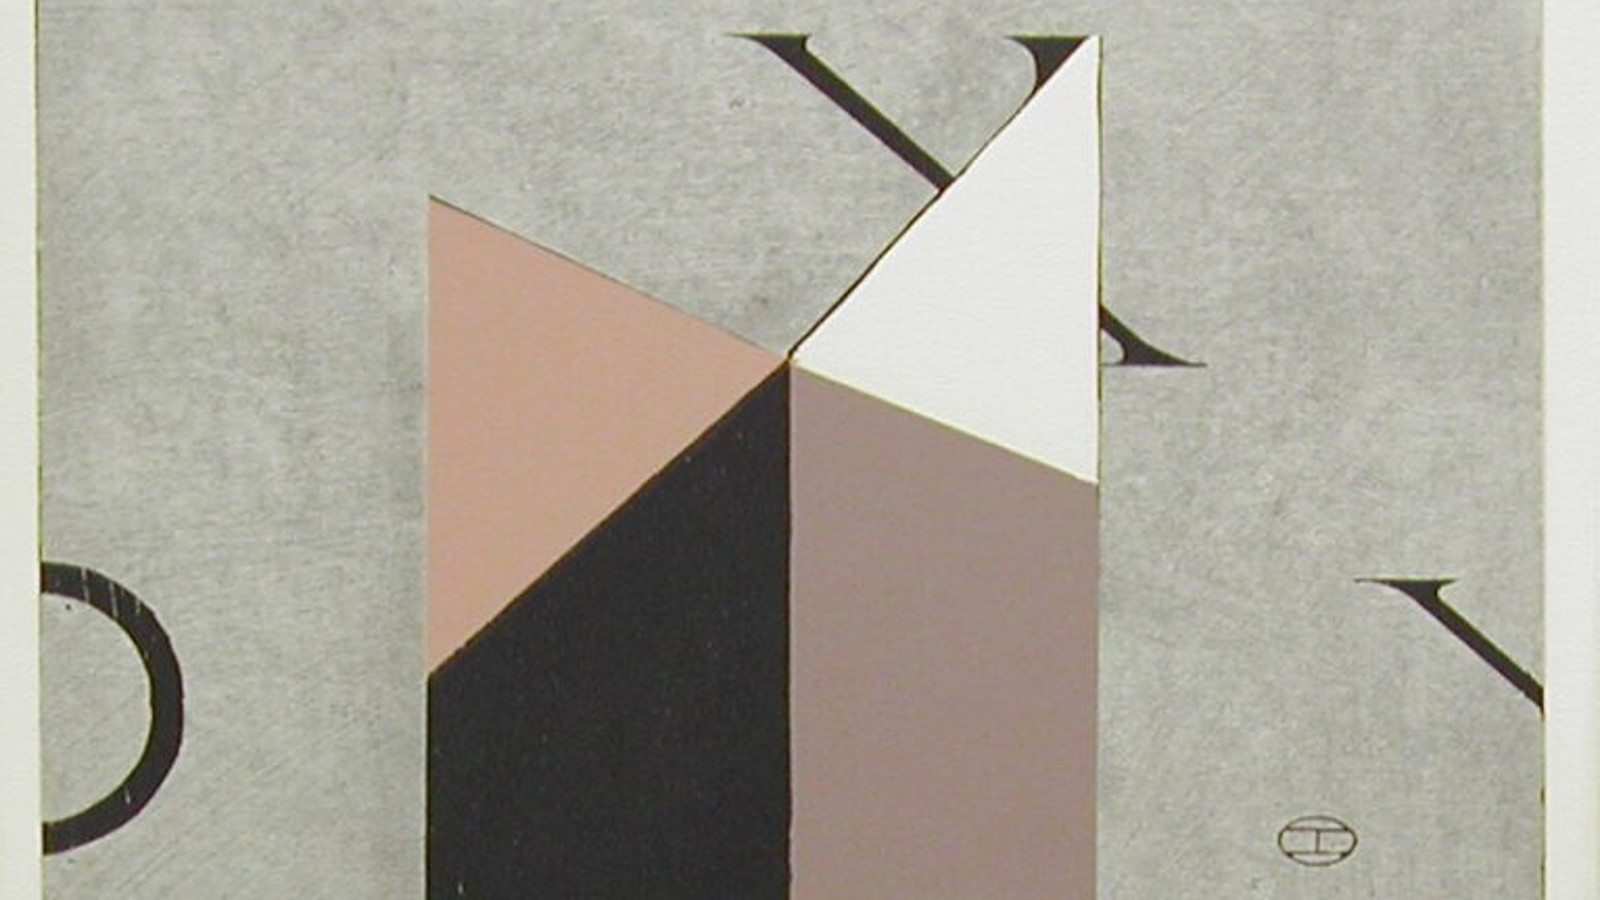 Kuvassa on harmaalla pohjalla suunnikkaan muotoisia kuutioita kaksi ja jotka on leikattu ylhäältä vinosti.  Värit ovat ruskehtavan harmaa, musta, harmaa ja valkoinen. Takana on osittainen mustan X:n sakara.